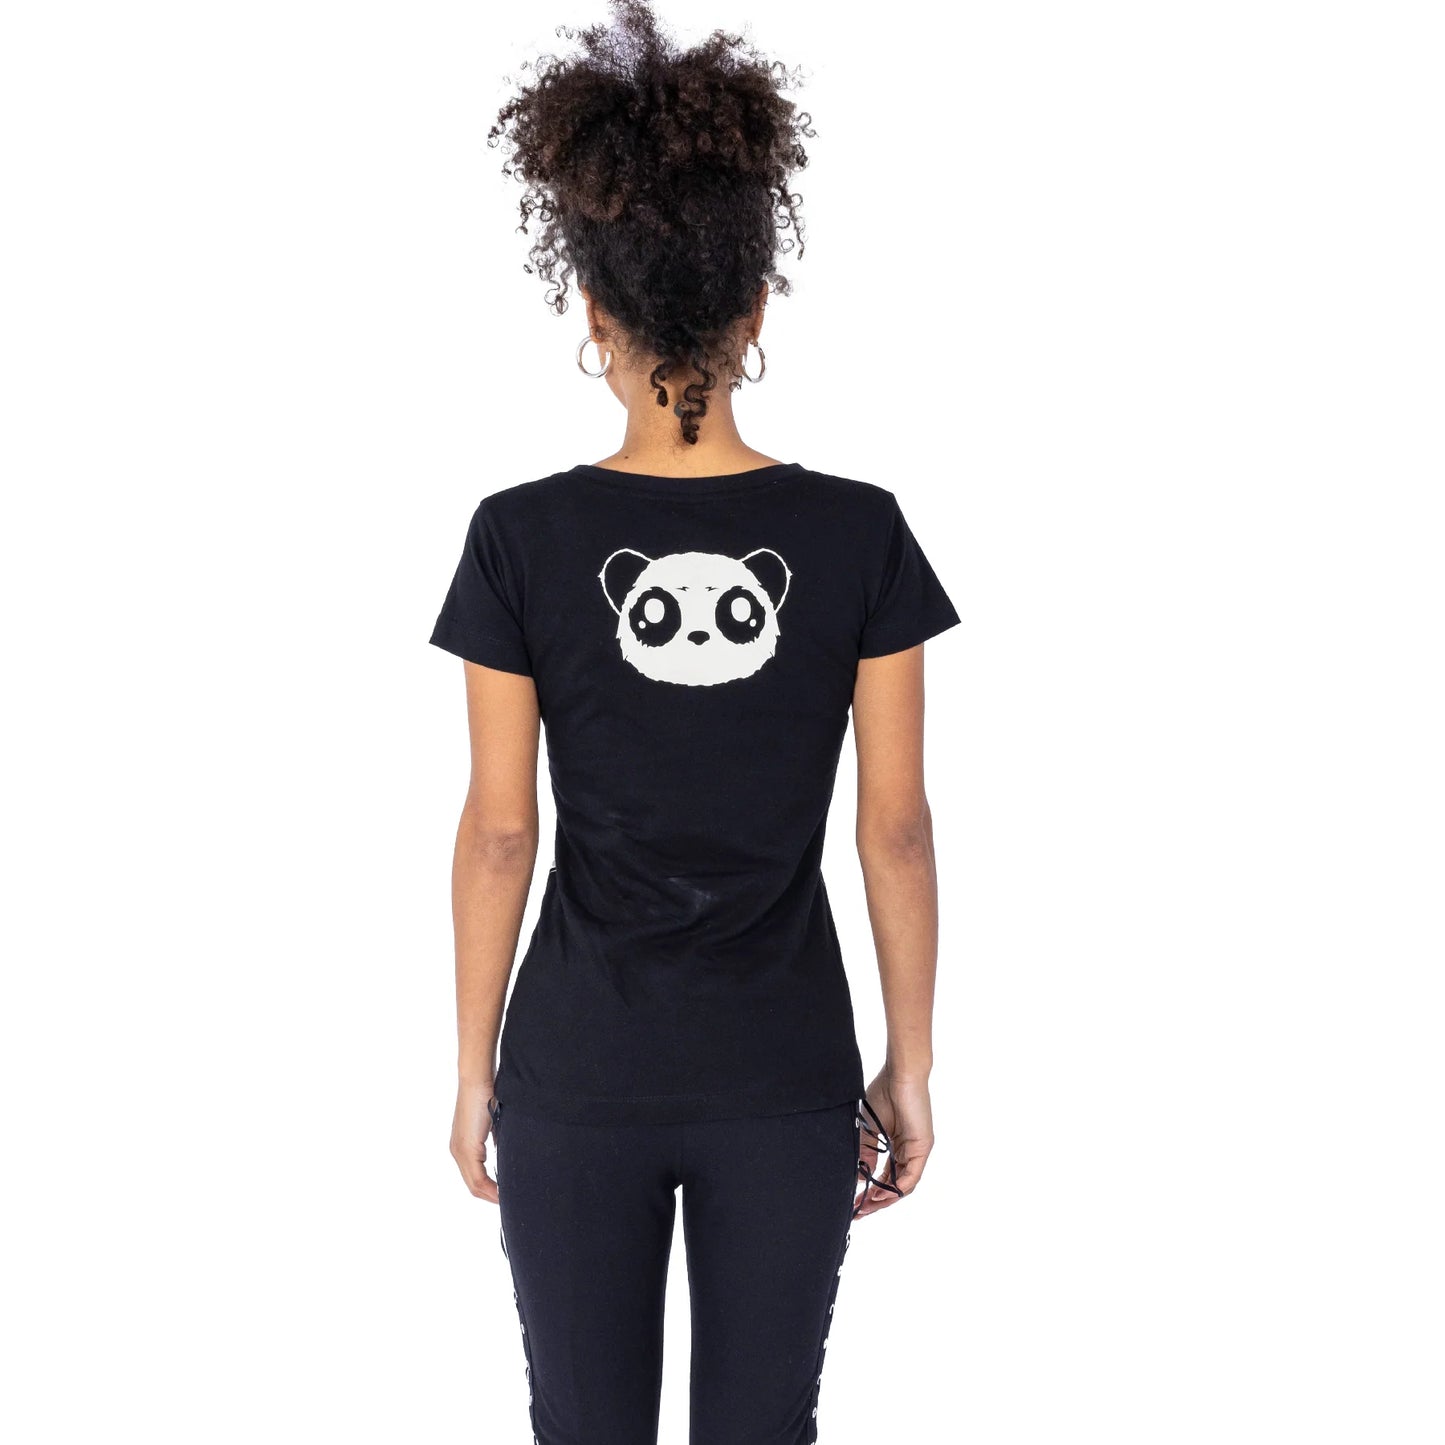 Rpckseite des schwarzen WE'RE ALL CUTE TSHIRT mit niedlichem Pandaprint von Killerpanda mit Logo